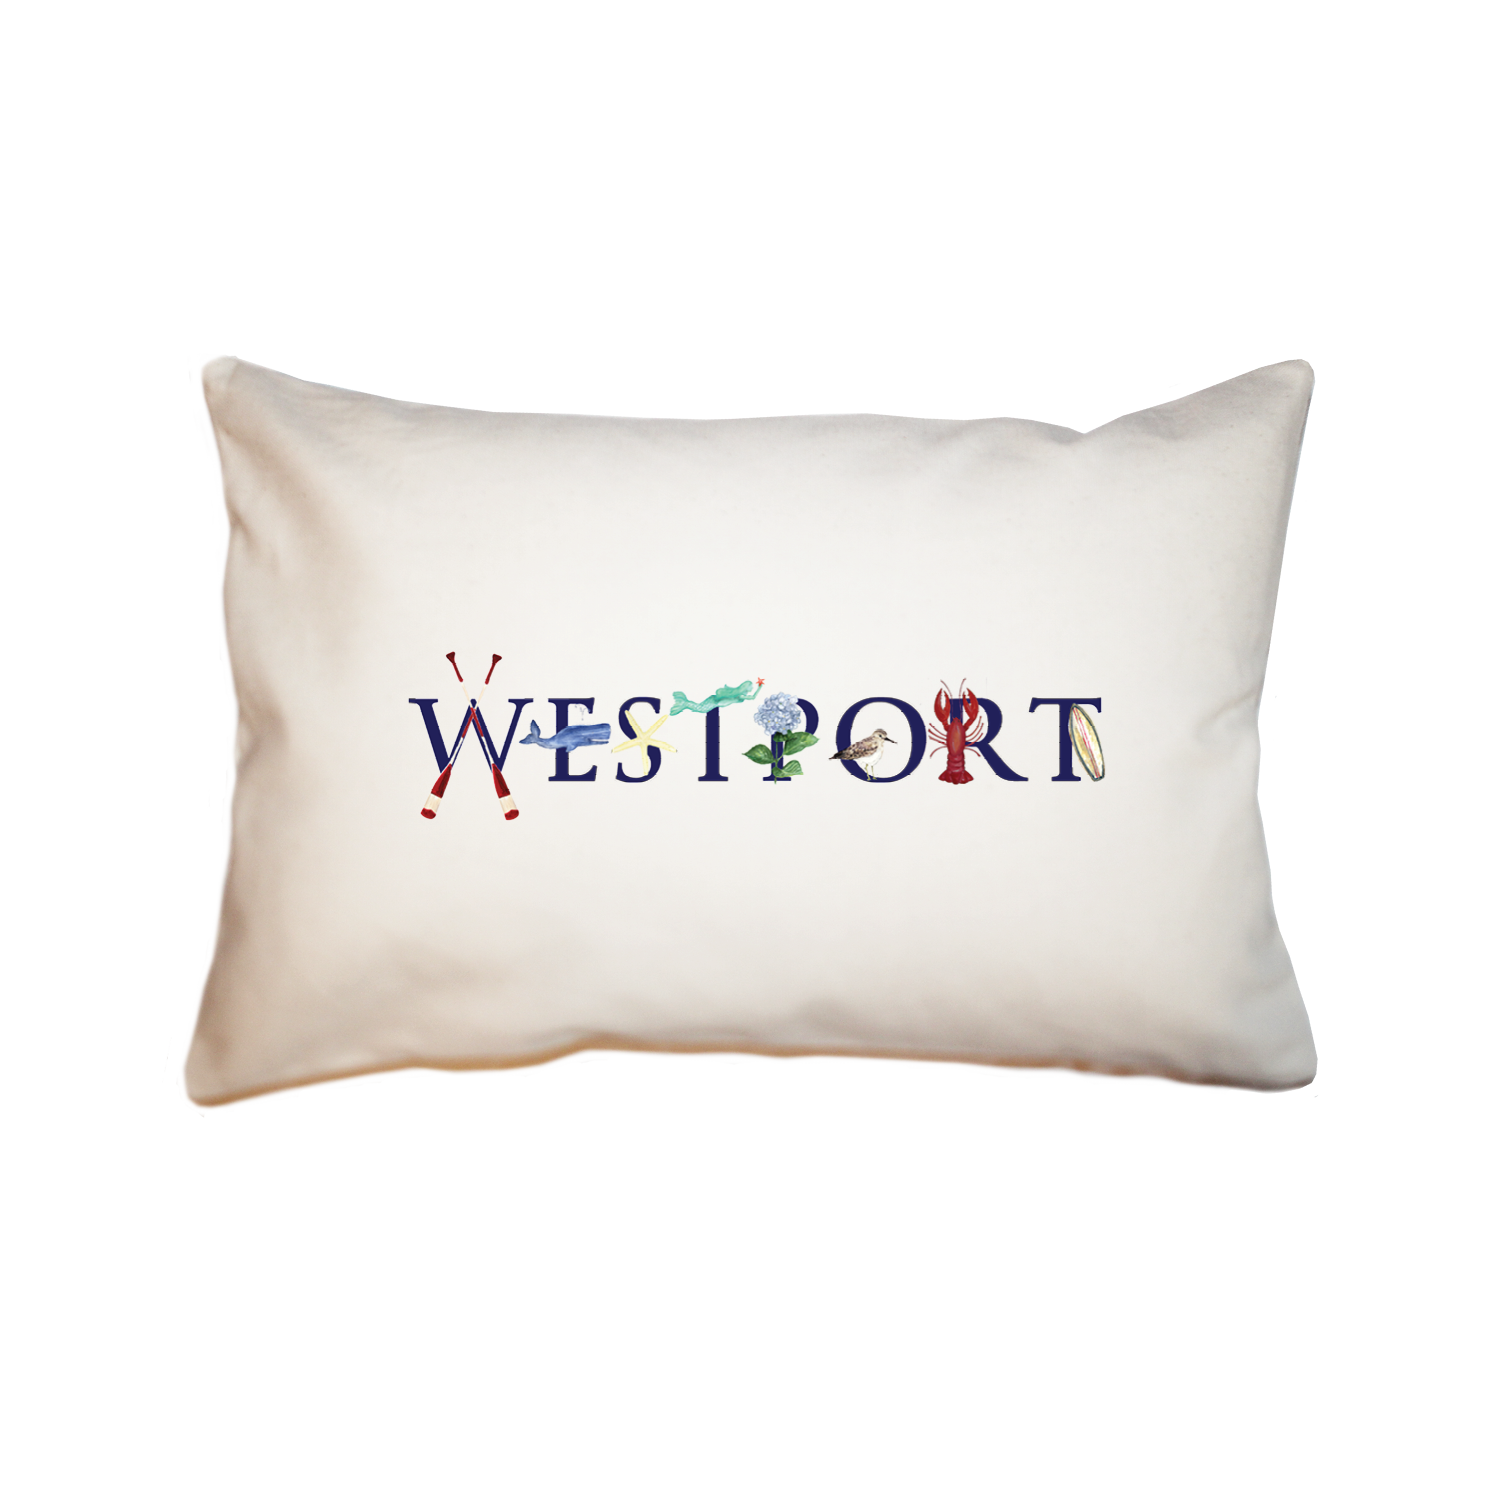 Westport large rectangle pillow